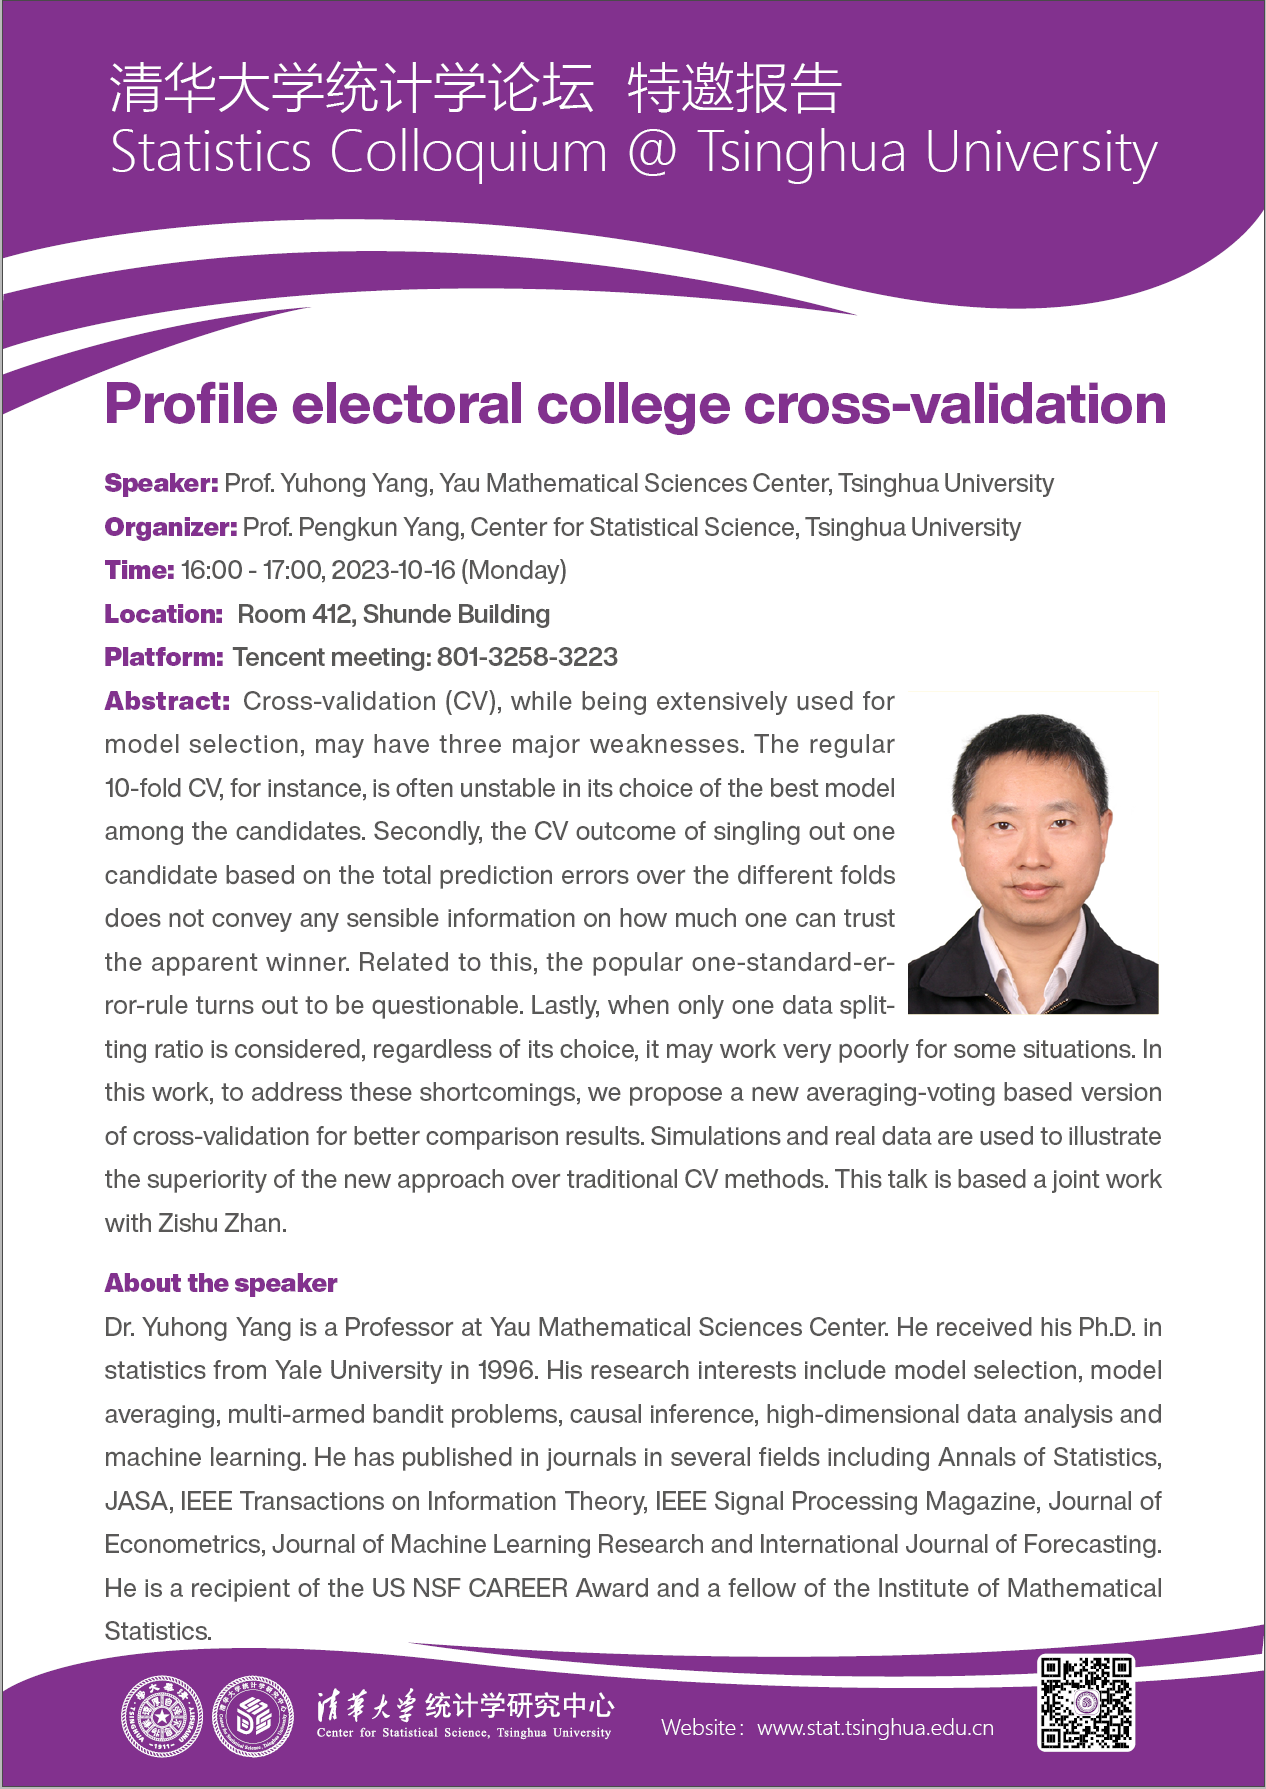 【统计学论坛】Profile Electoral College Cross-validation